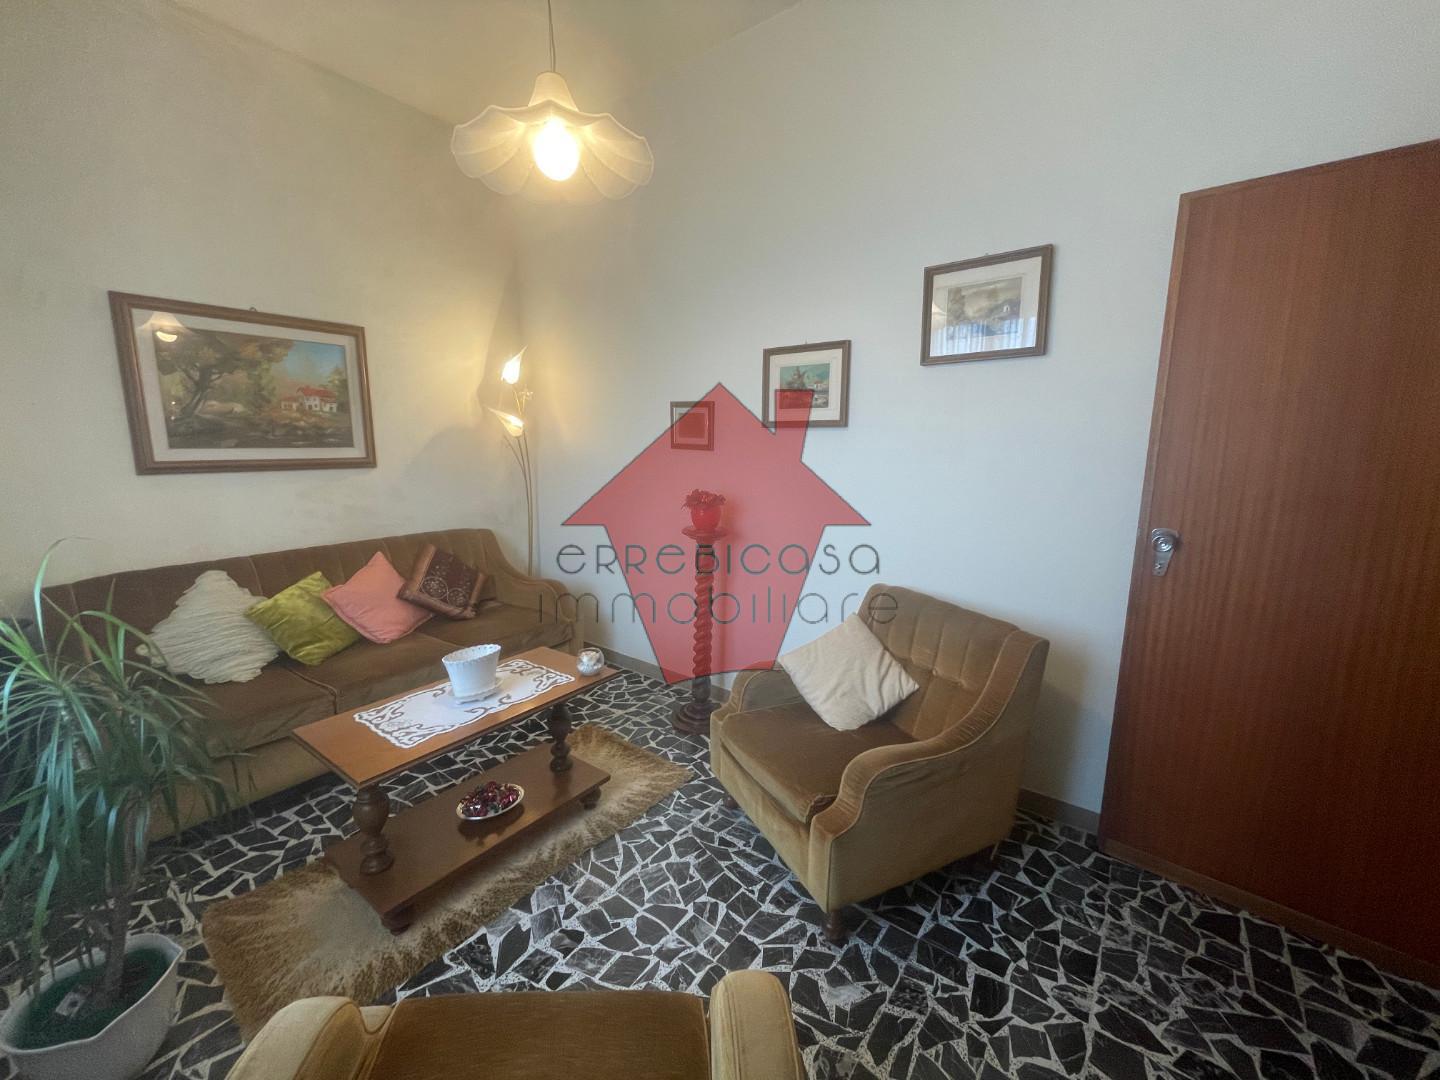 Appartamento in vendita a Castelfiorentino, 4 locali, prezzo € 165.000 | PortaleAgenzieImmobiliari.it